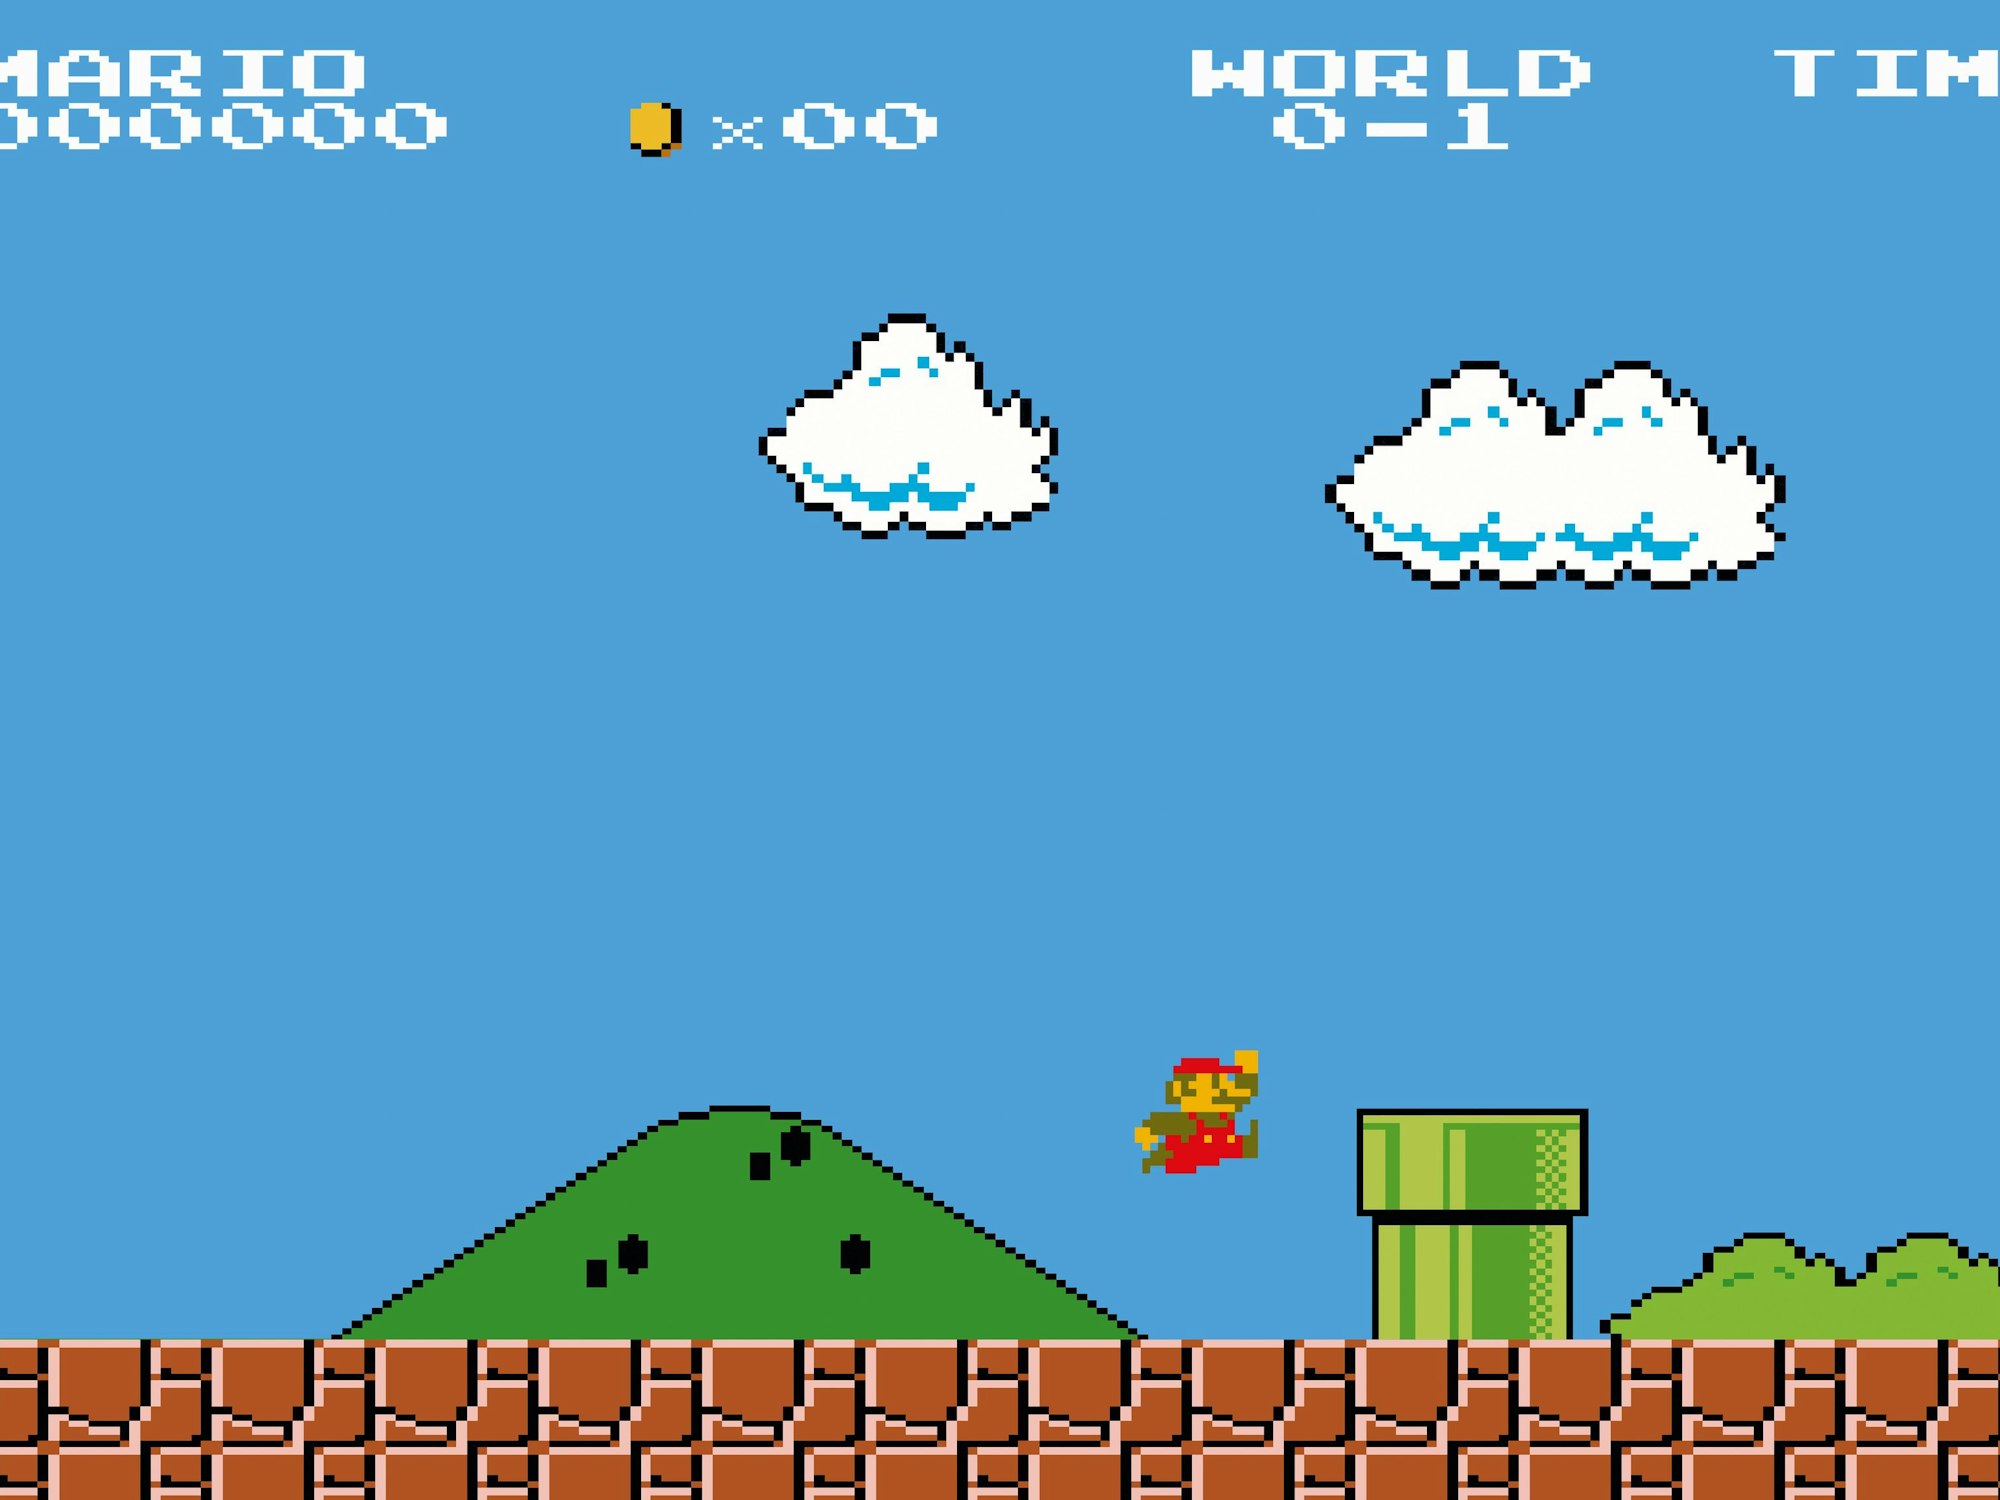 Screenshot vom originalen Super Mario Bros. Videospiel von 1985.


Bild zur Verfügung gestellt vom Taschen Verlag zum Buch "The Computer"

